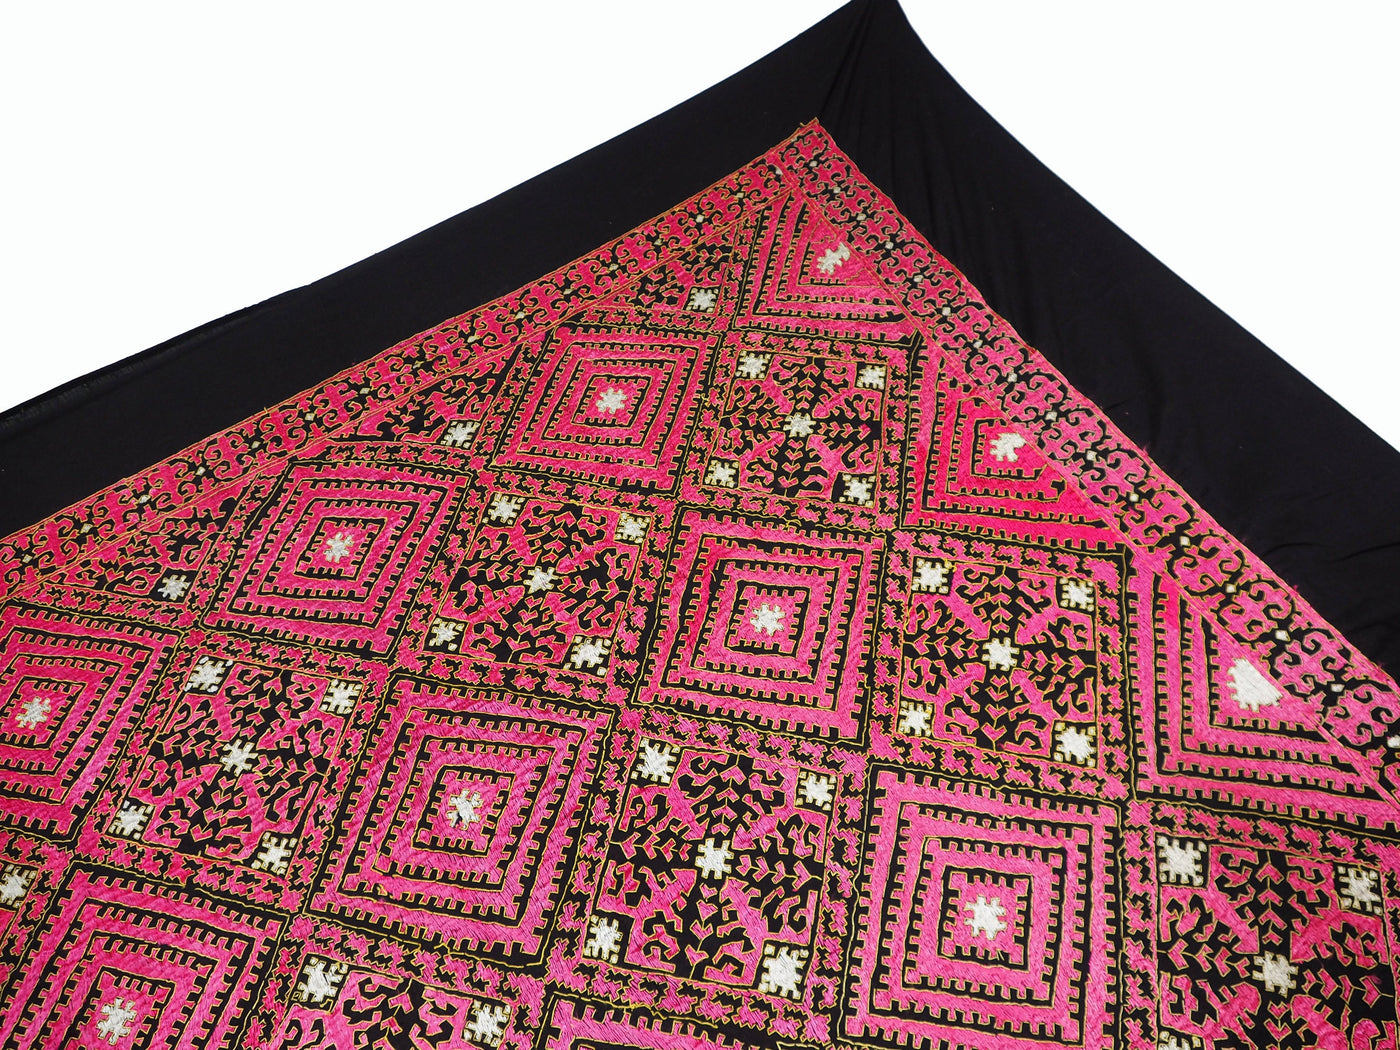 225x225 cm seltener dekorative Seide bestickt Pulkari Schlafzimmer Bett tagesdecke Bettüberwurf sofaüberwurf Swat-Tal Pakistan  Afghanistan Textilien Orientsbazar   